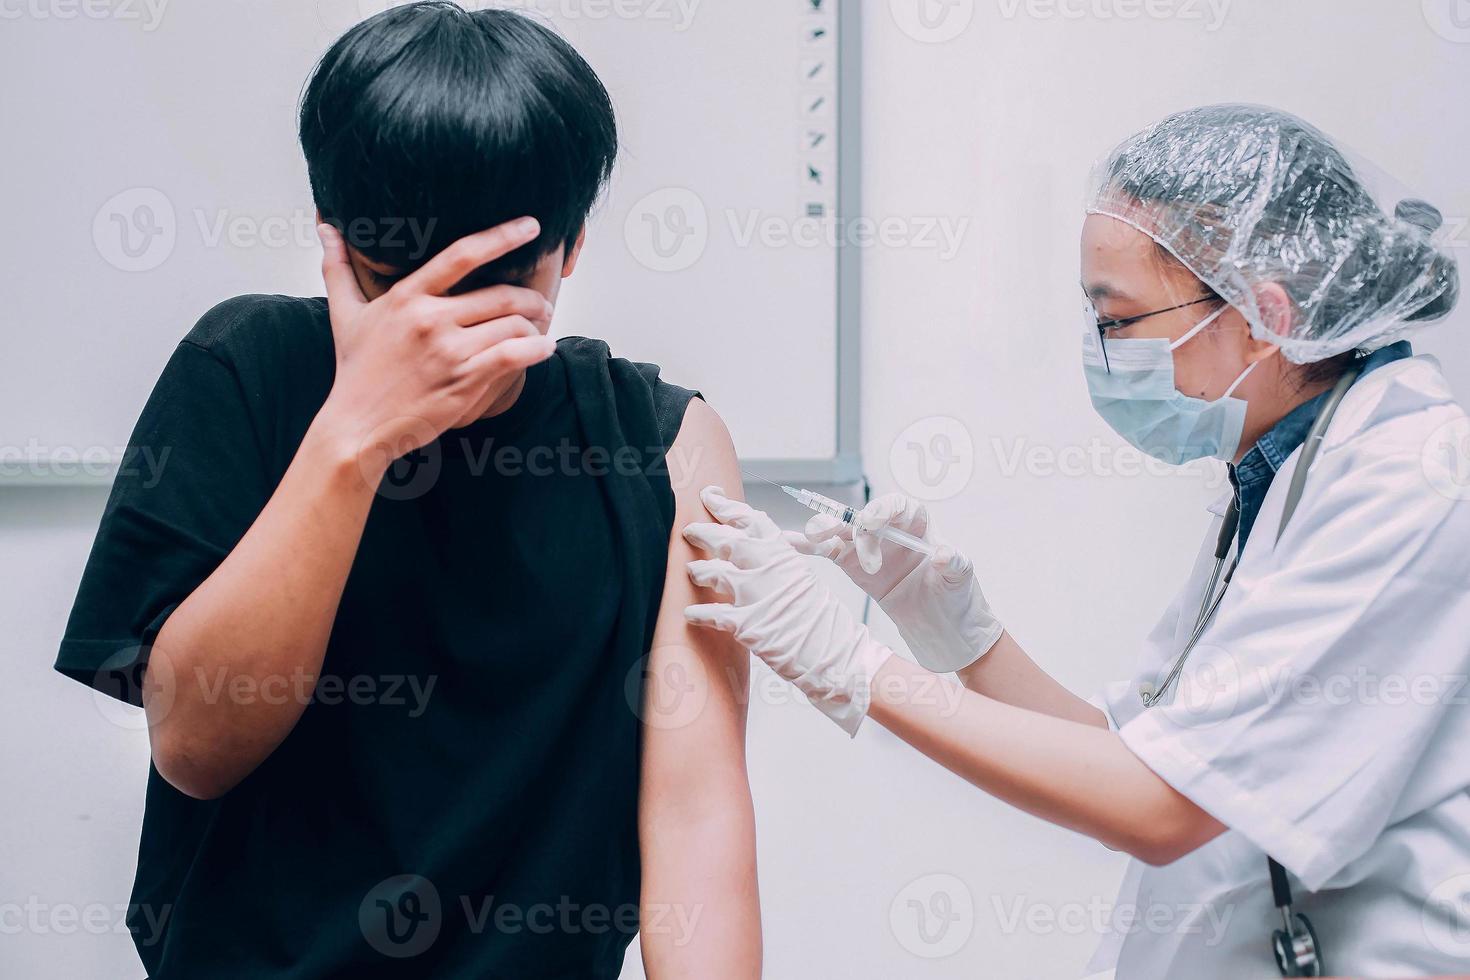 jonge patiënt met angst of angstuitdrukking die zijn gezicht bedekt wanneer hij door de arts wordt geïnjecteerd met vaccin foto